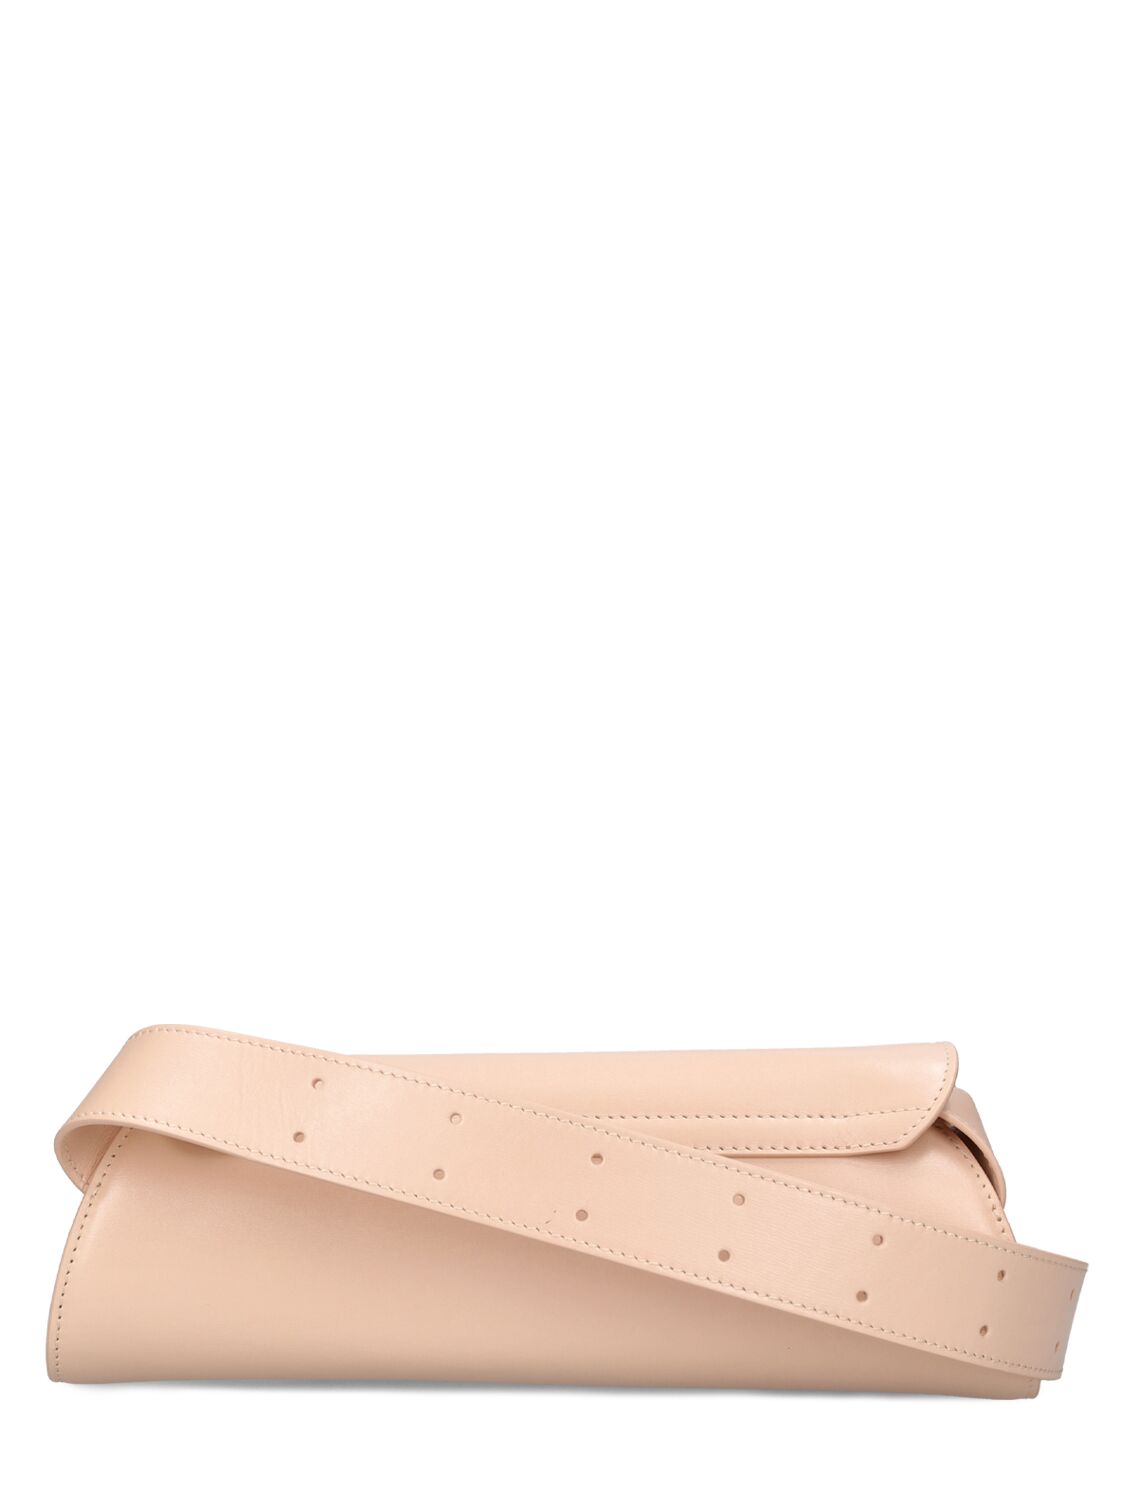 Shop Jil Sander Small Cannolo Leather Shoulder Bag In Rose